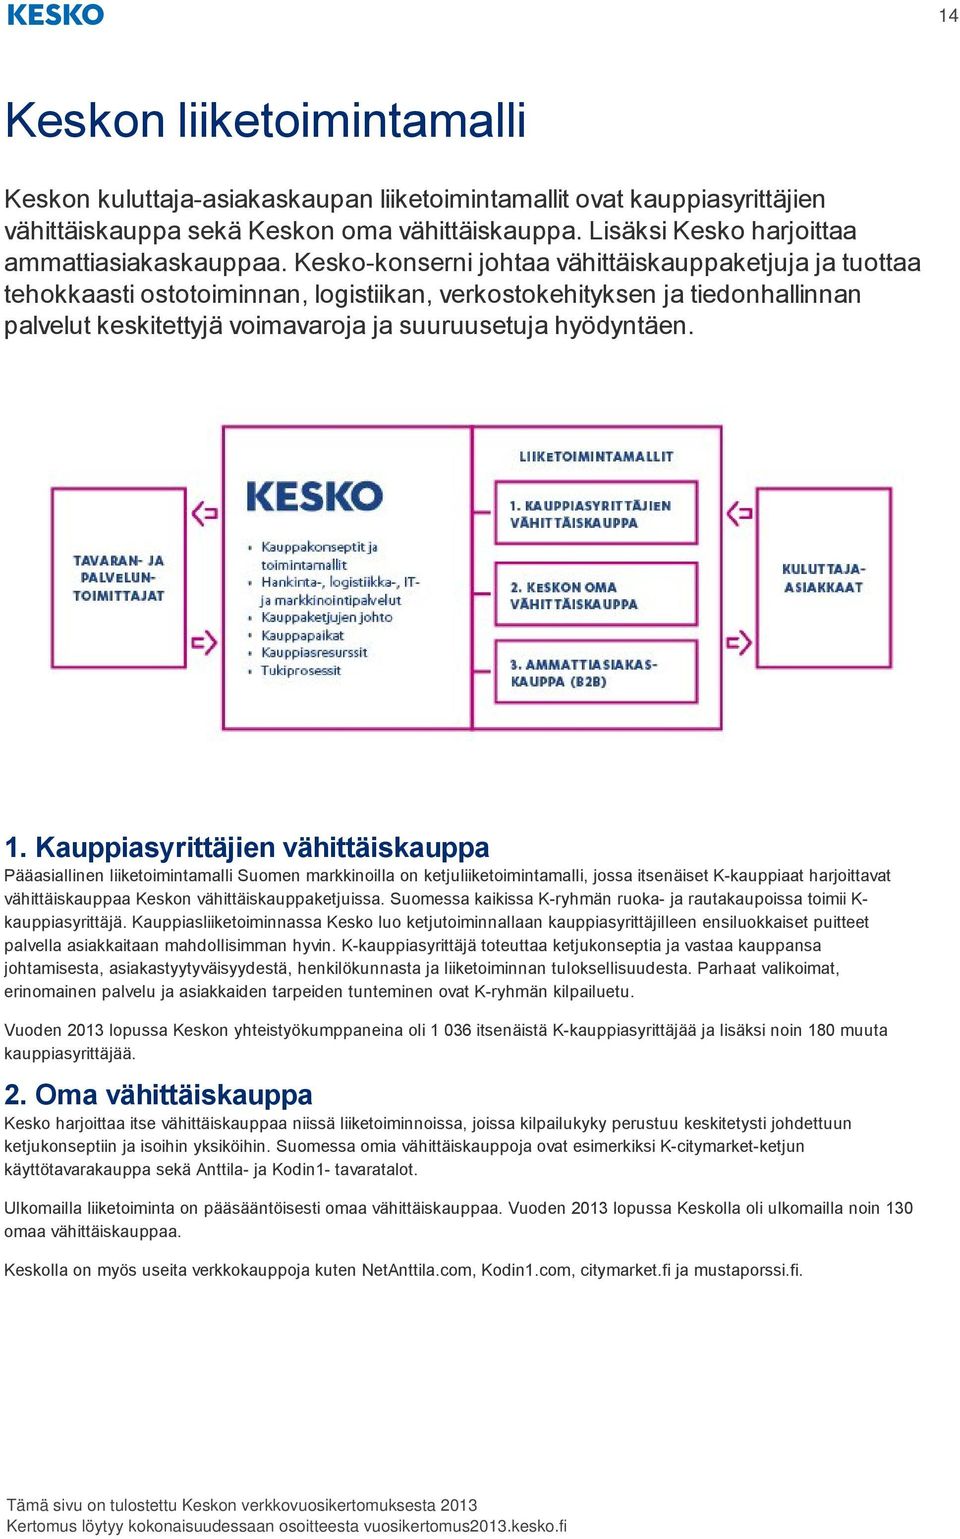 Kauppiasyrittäjien vähittäiskauppa Pääasiallinen liiketoimintamalli Suomen markkinoilla on ketjuliiketoimintamalli, jossa itsenäiset K-kauppiaat harjoittavat vähittäiskauppaa Keskon